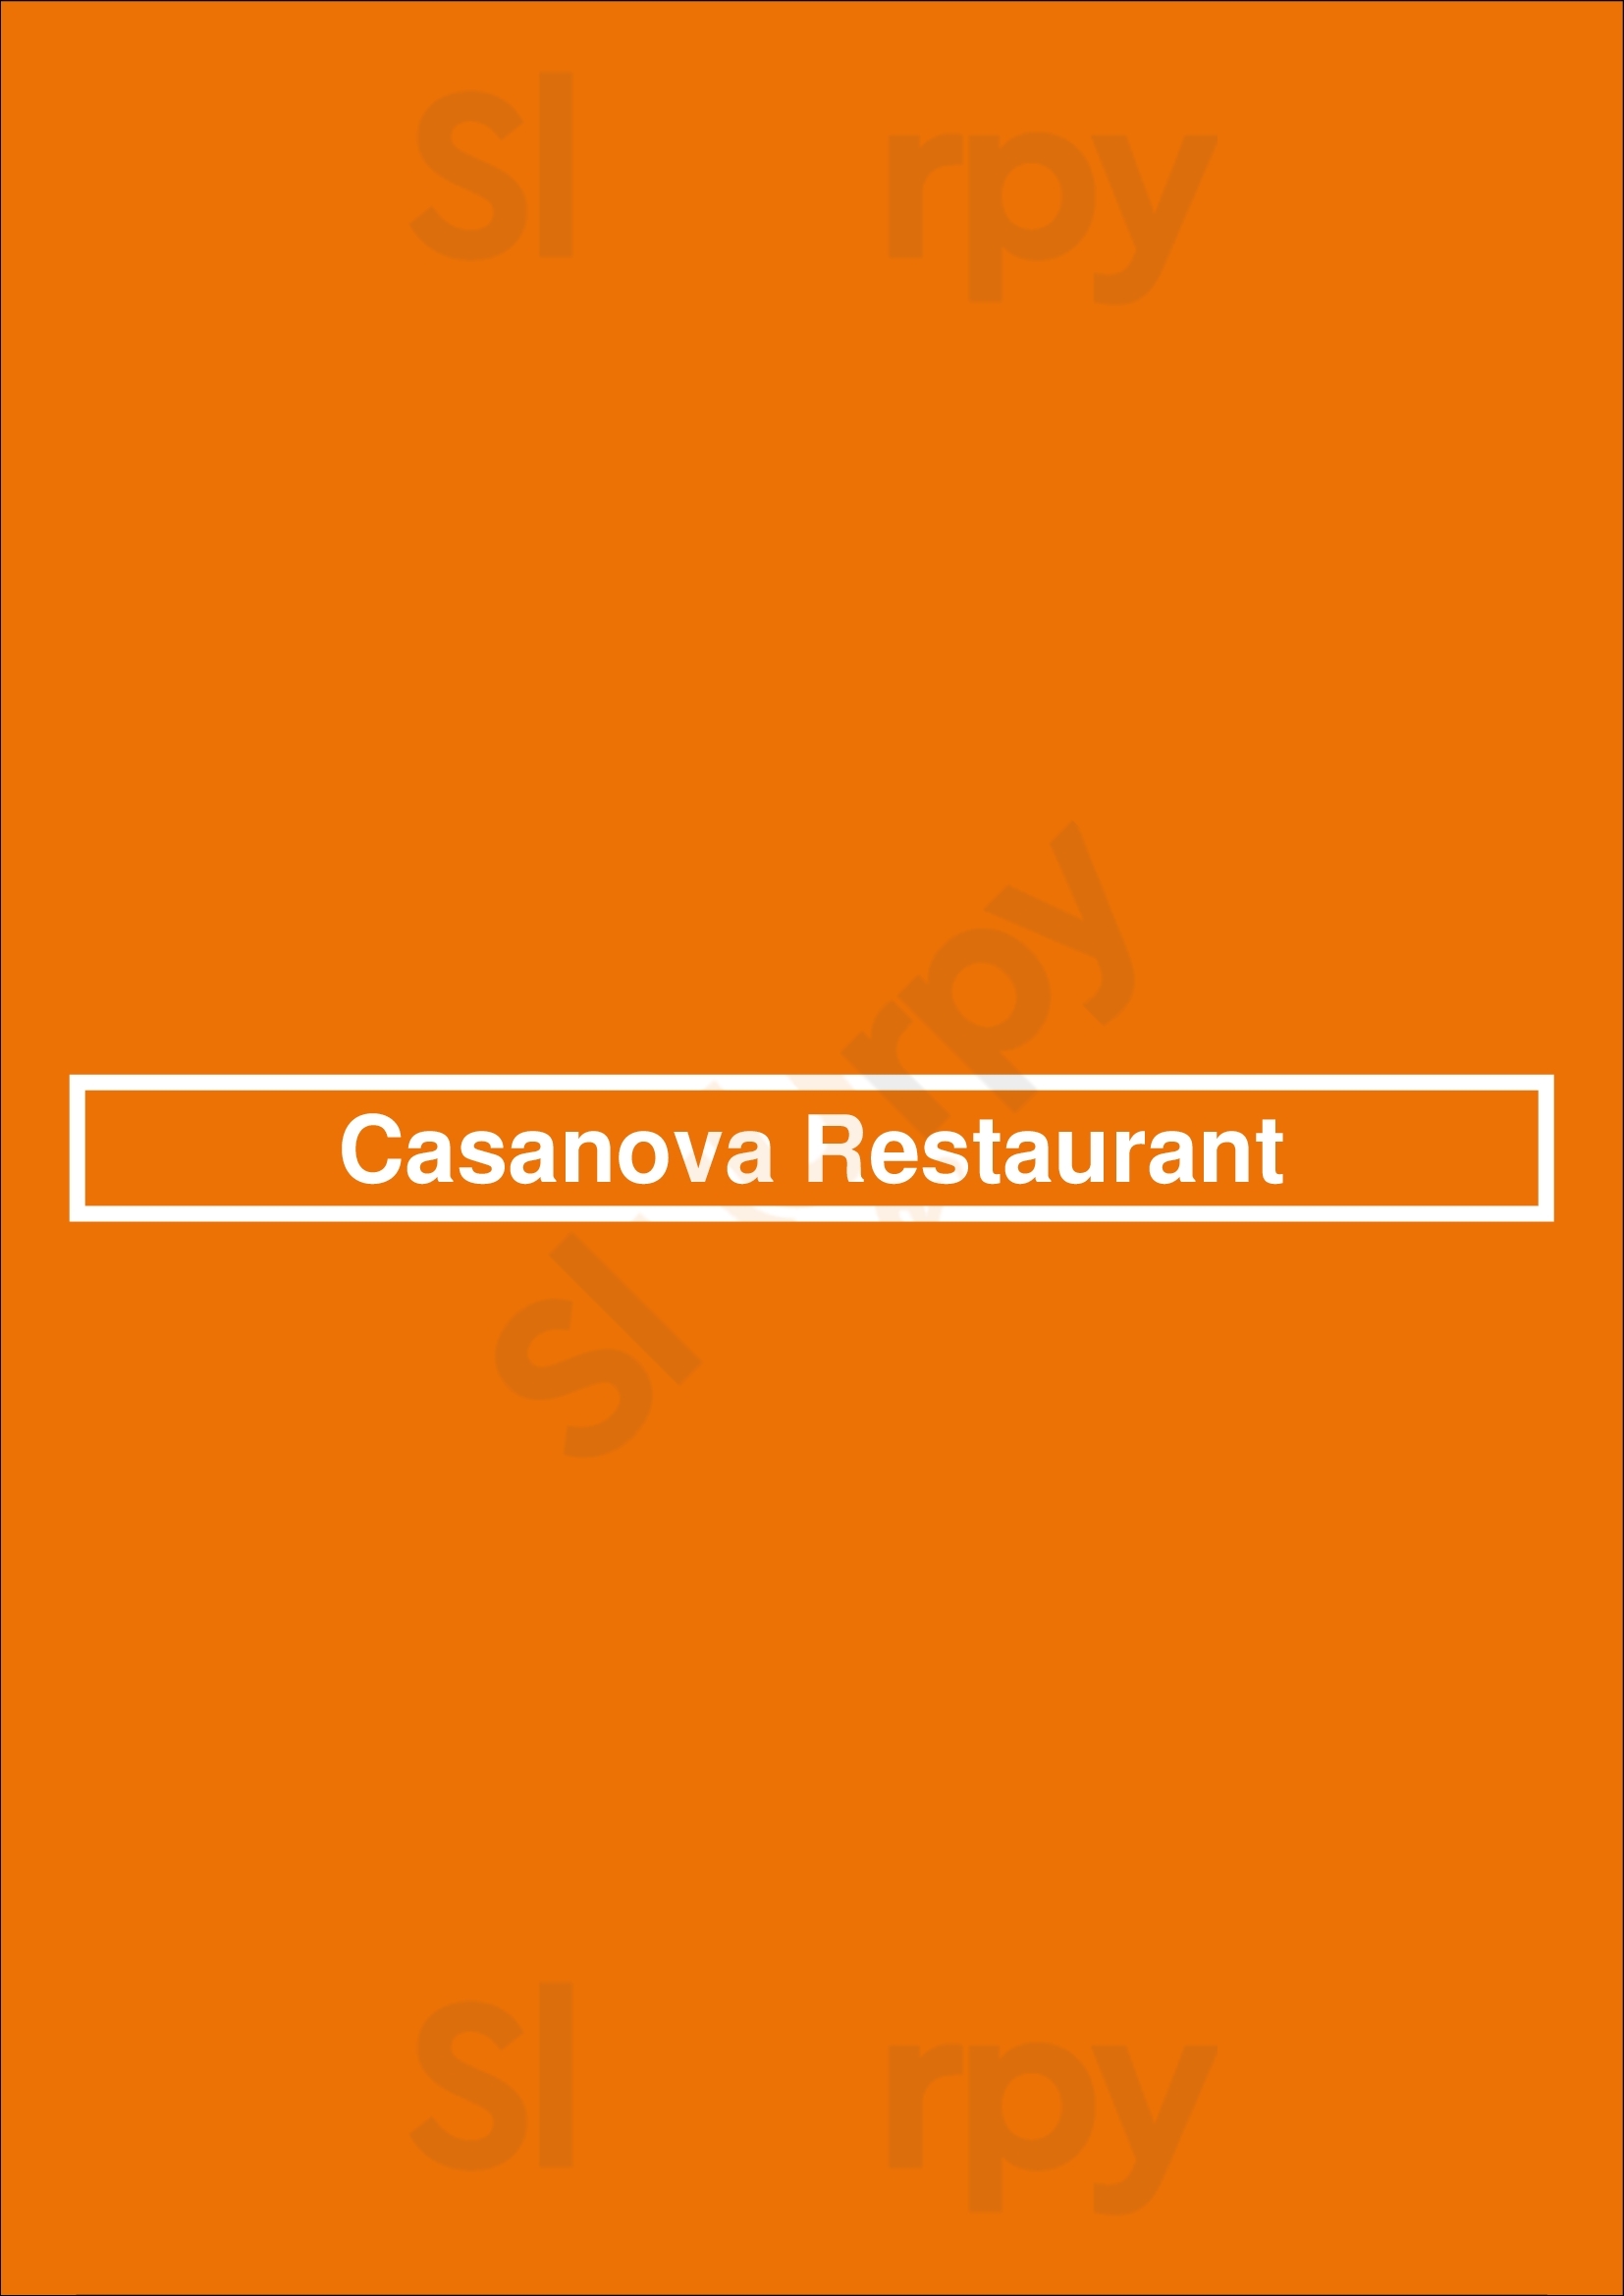 Casanova Restaurant Las Vegas Menu - 1